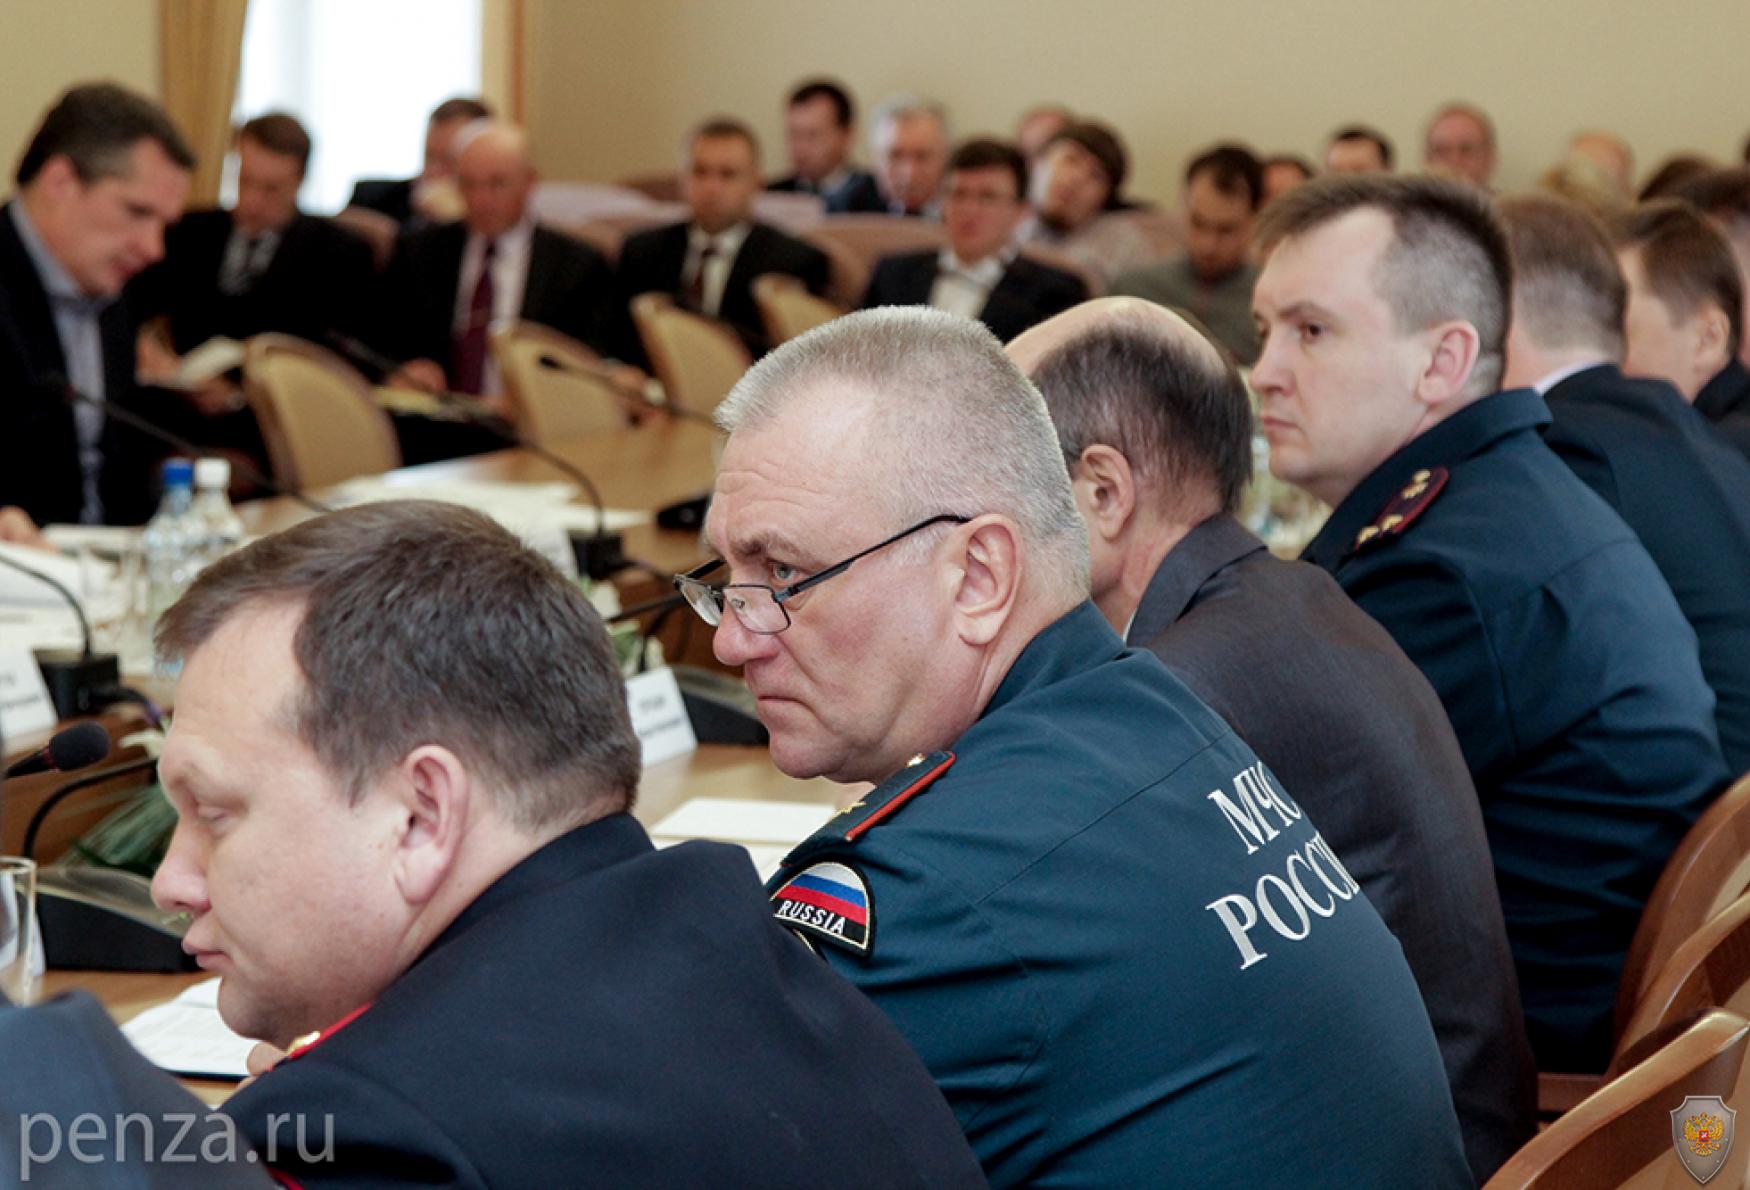 Совместное заседание областной Антитеррористической комиссии и Оперативного штаба в Пензенской области